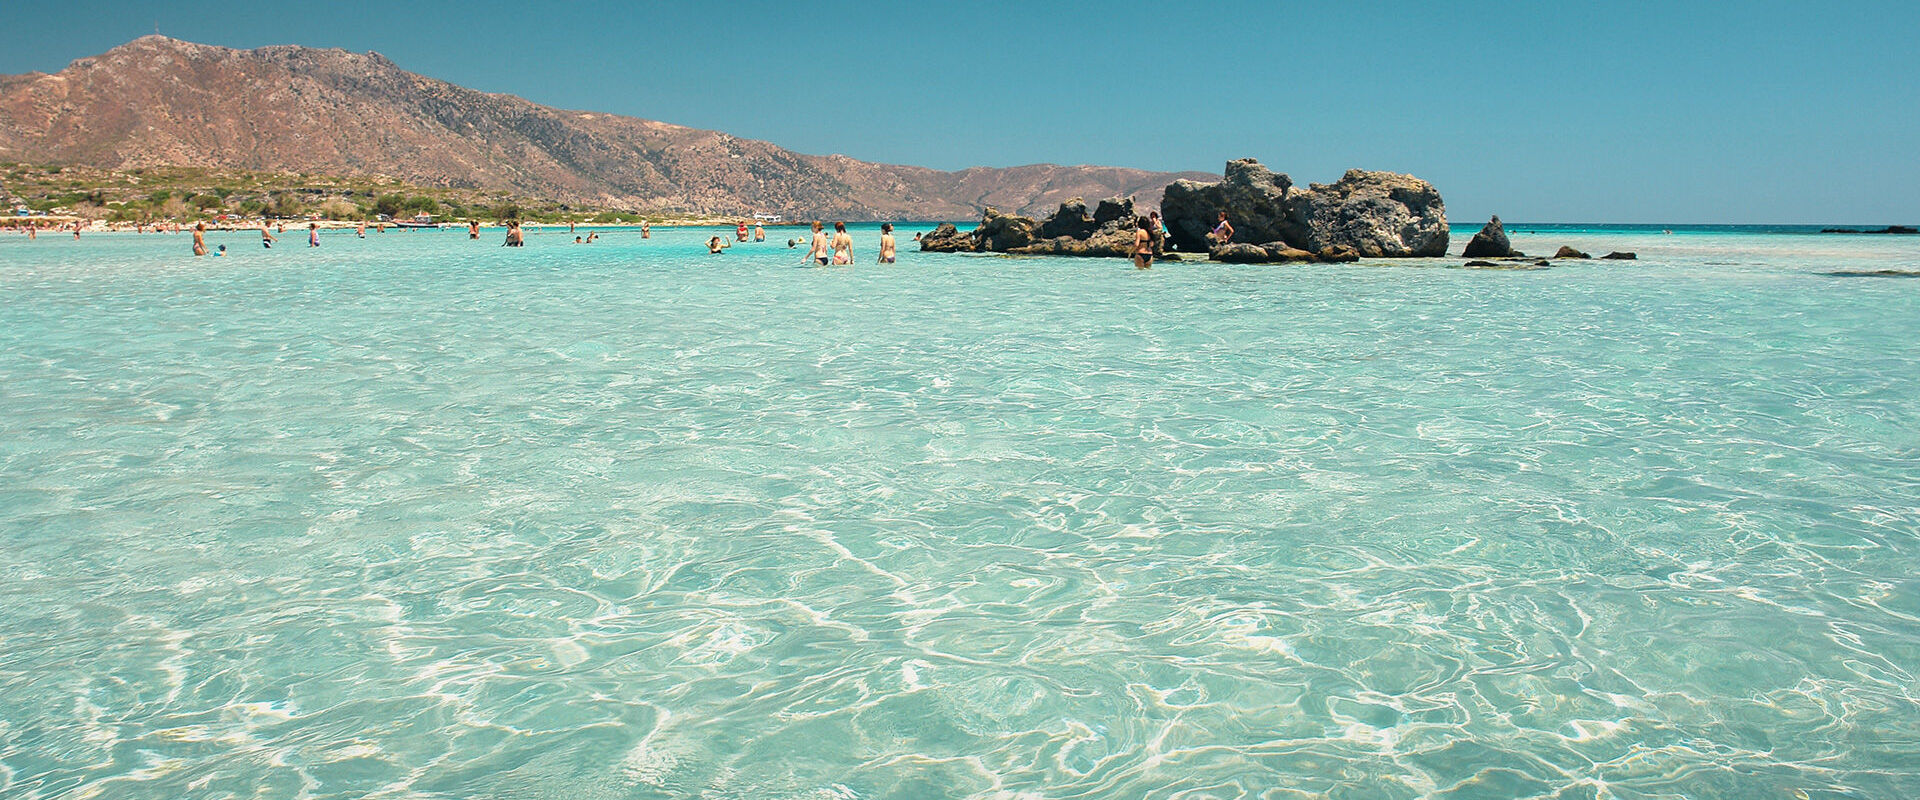 Το Ελαφονήσι είναι ένα νησί στο οποίο μπορείς να πας περπατώντας αφού το νερό φτάνει μέχρι τα γόνατά σου.